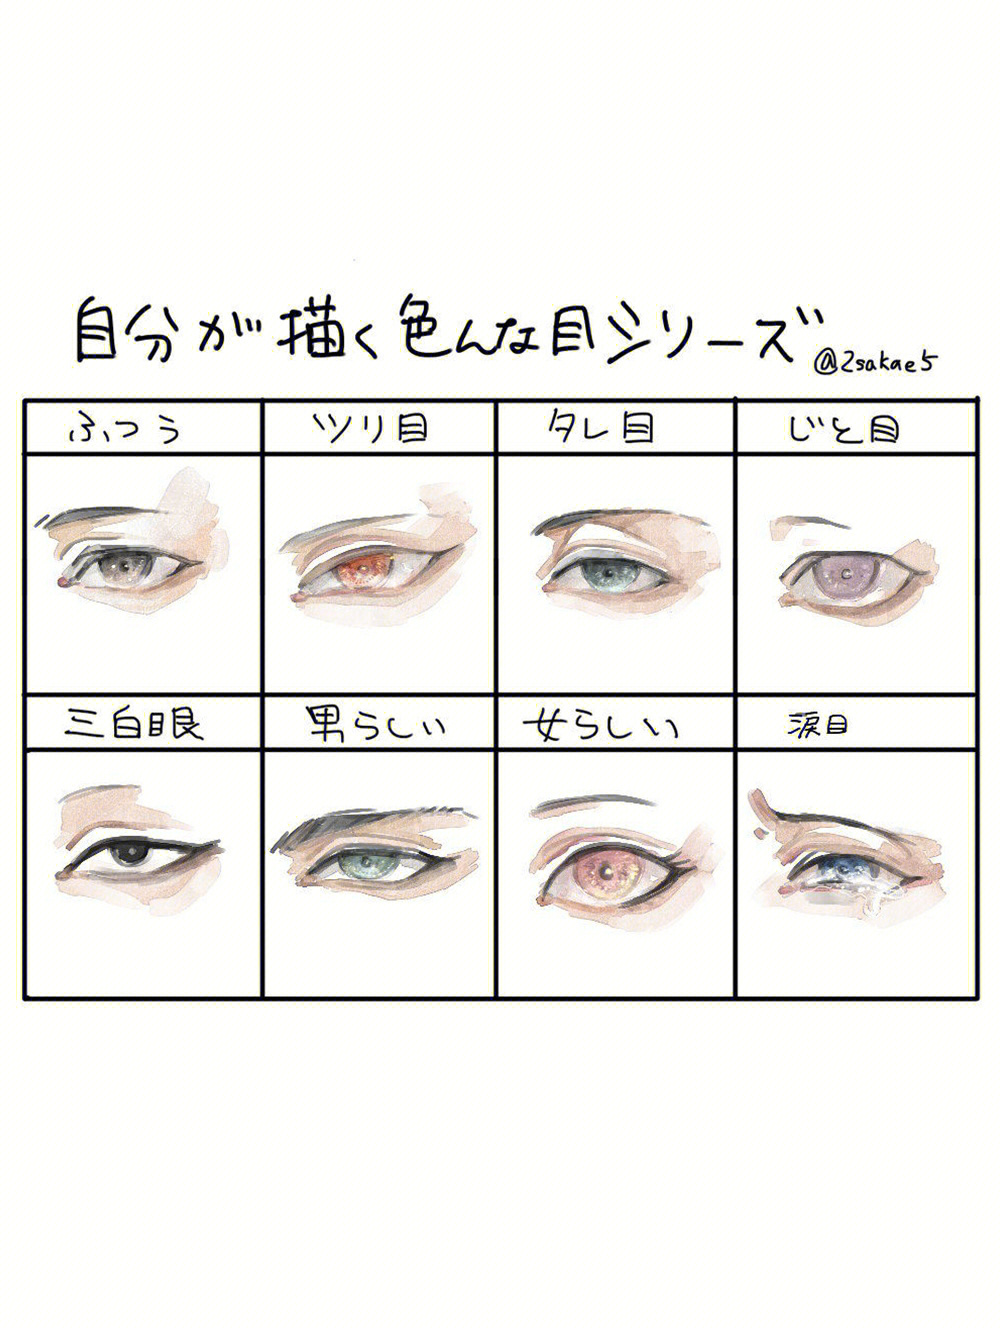 不同类型的眼睛应该怎么画